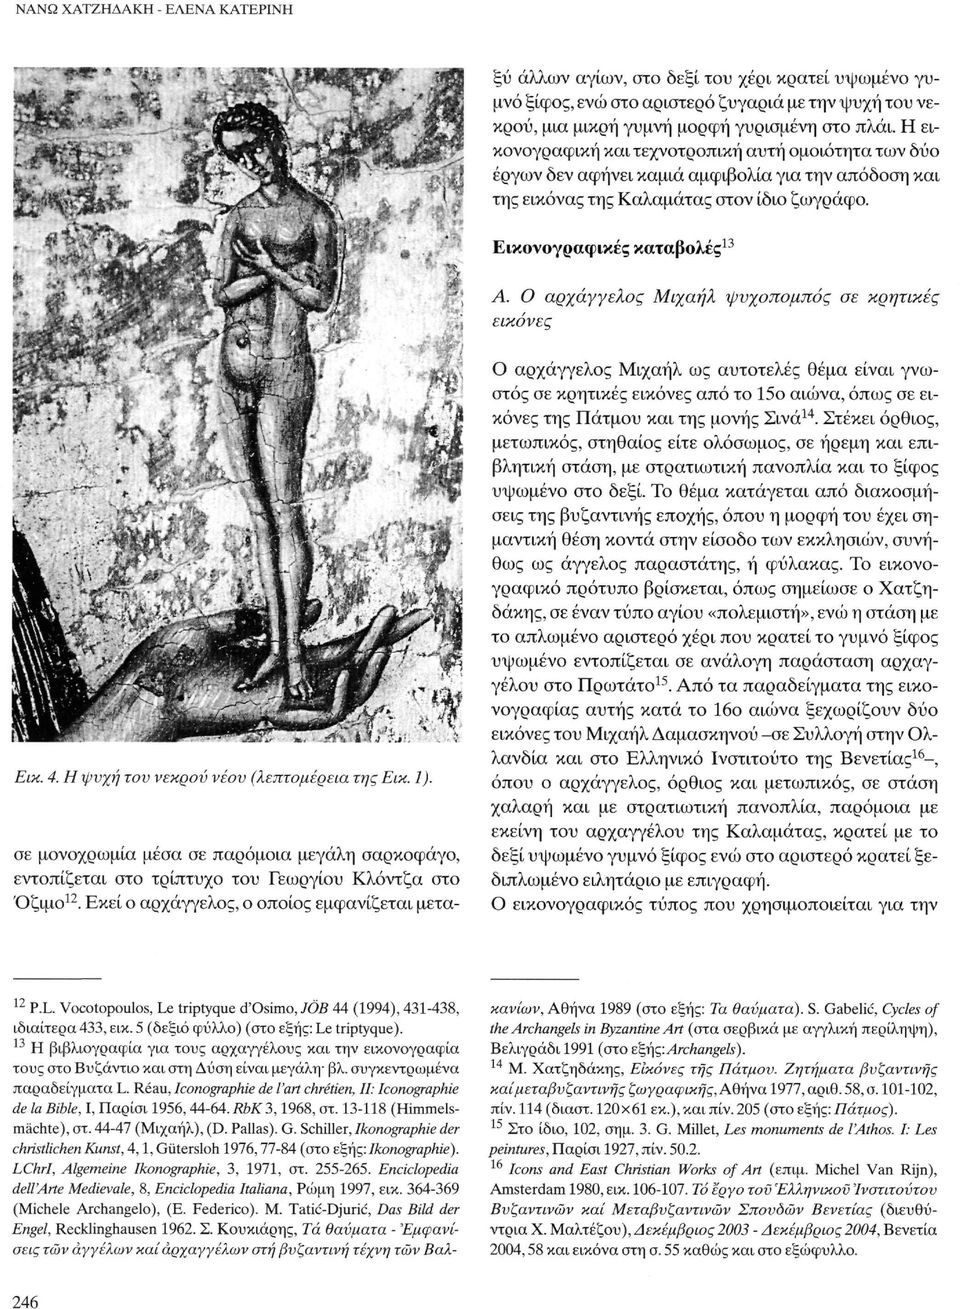 Réau, Iconographie de l'art chrétien, II: Iconographie de la Bible, Ι, Παρίσι 1956,44-64. RbK 3,1968, στ. 13-118 (Himmelsmächte), στ. 44-47 (Μιχαήλ), (D. Pallas). G.